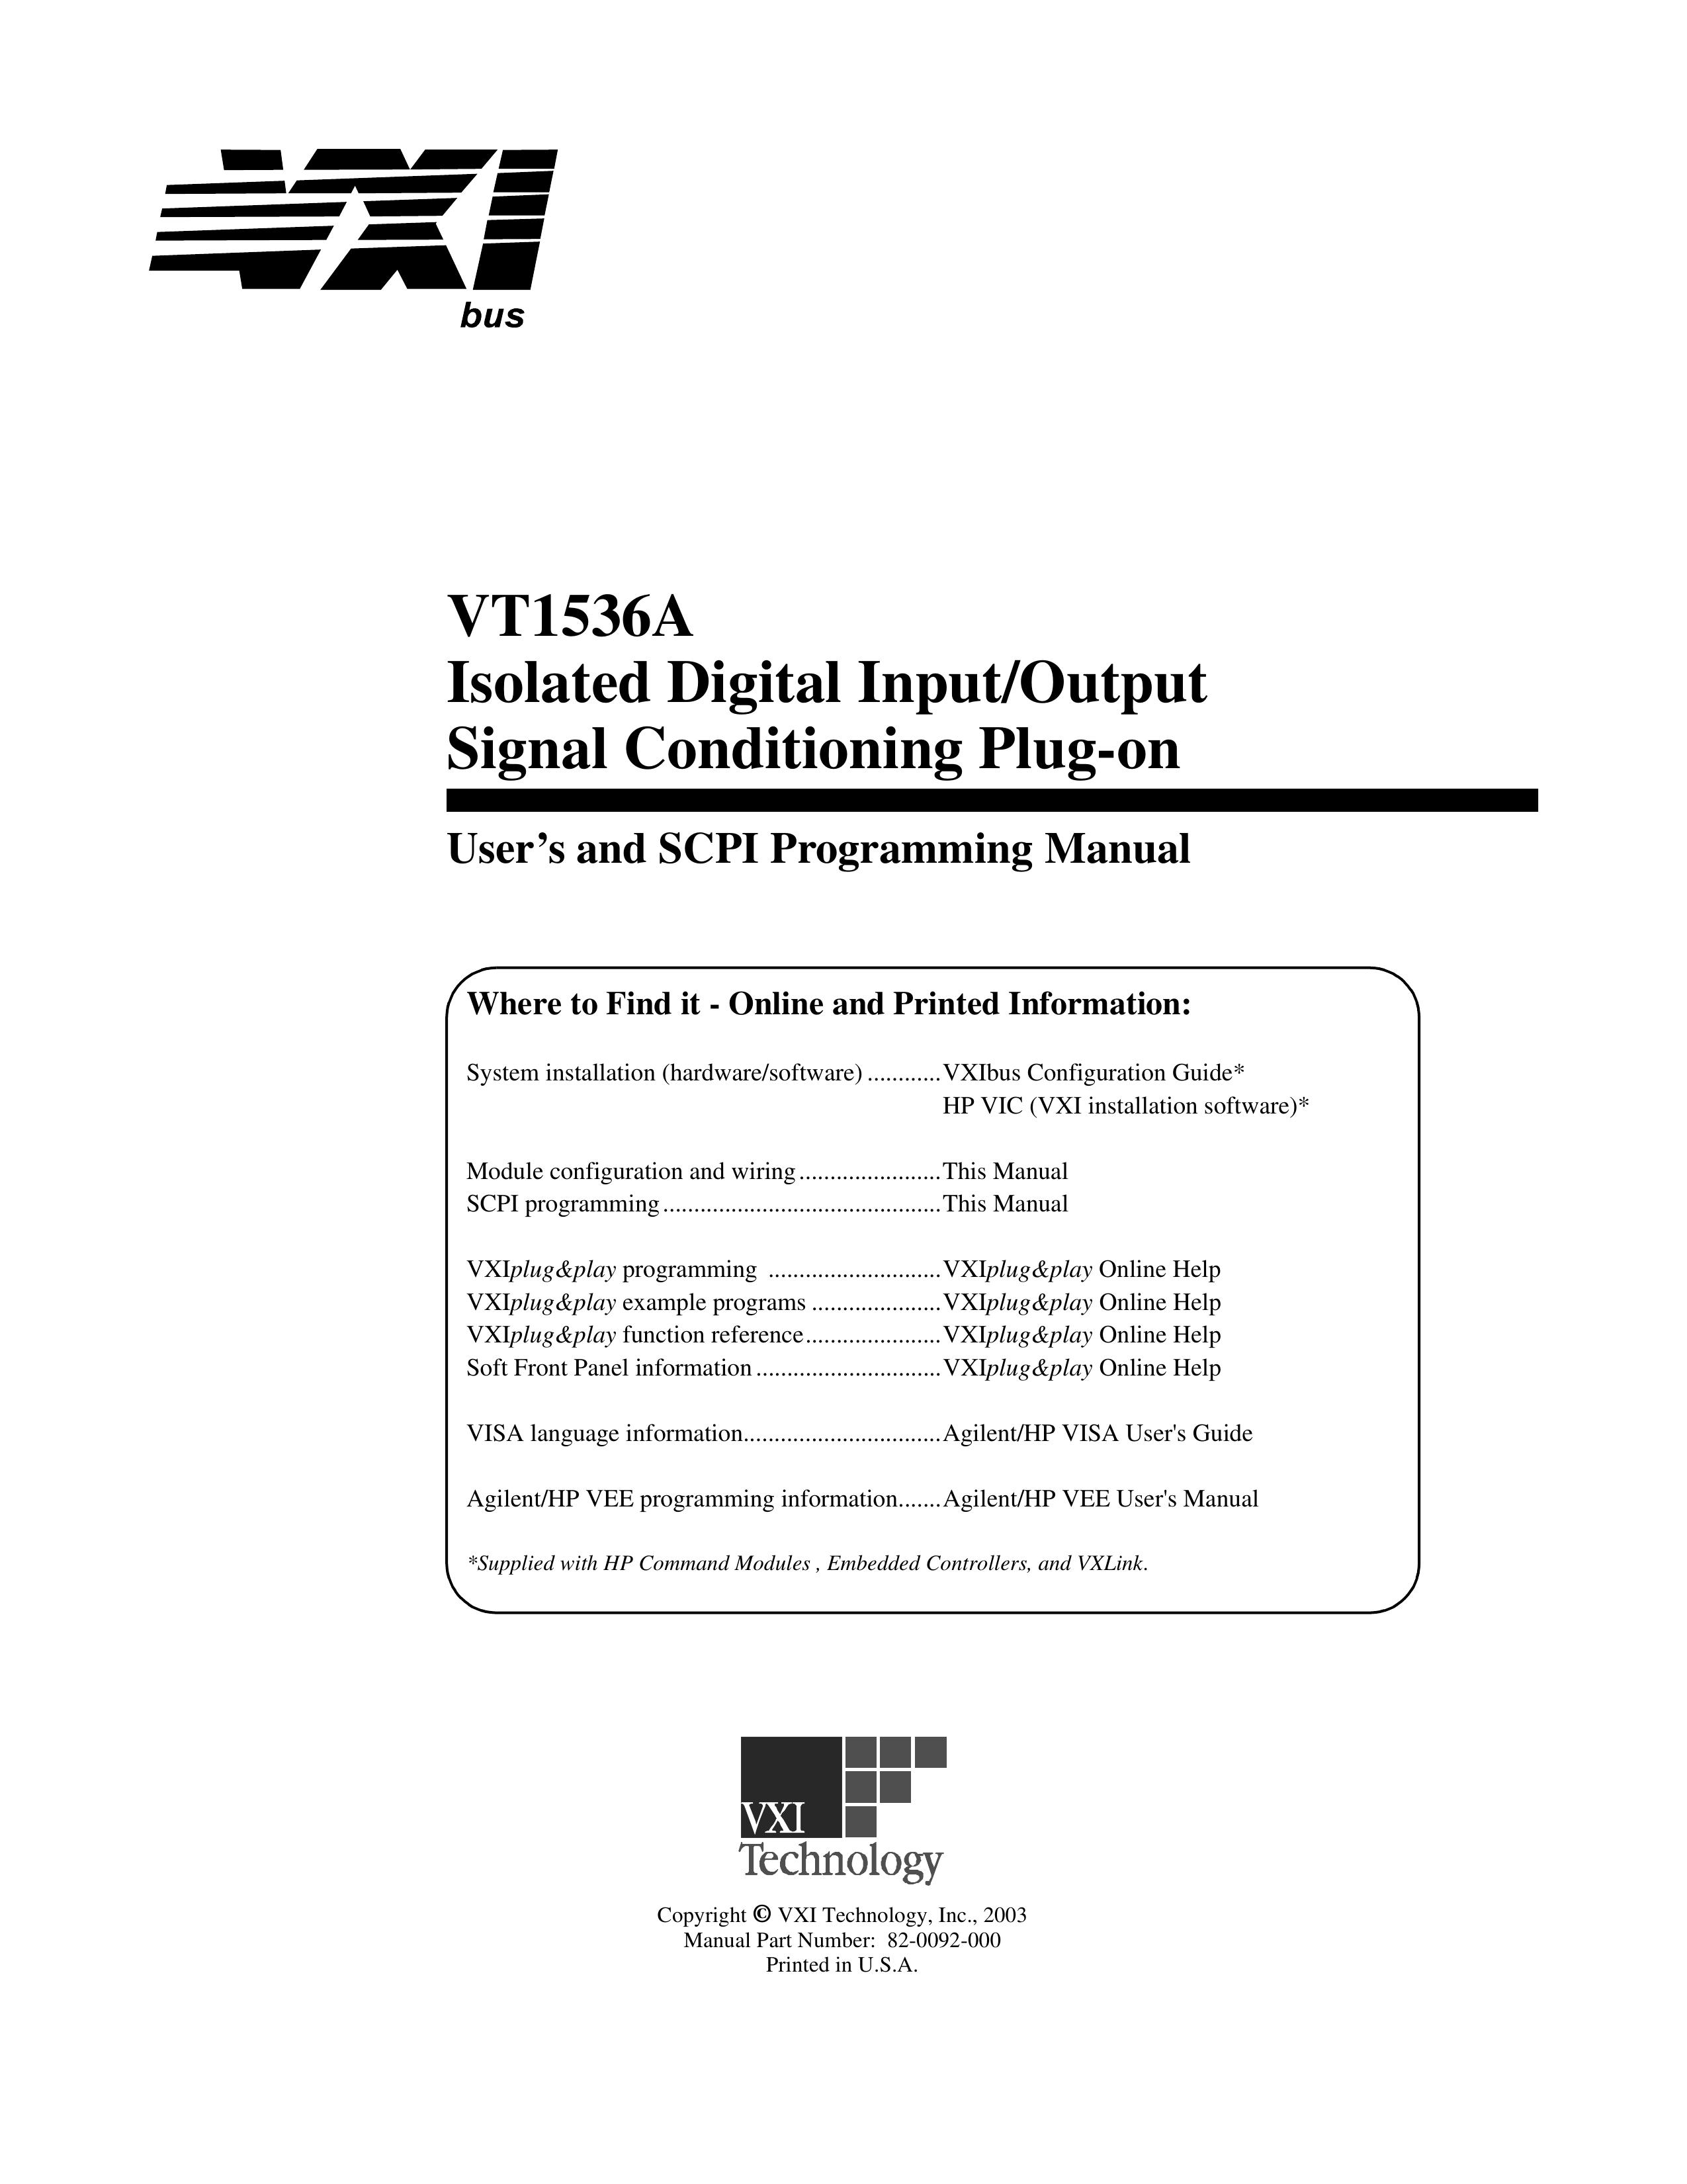 VXI VT1536A Music Mixer User Manual